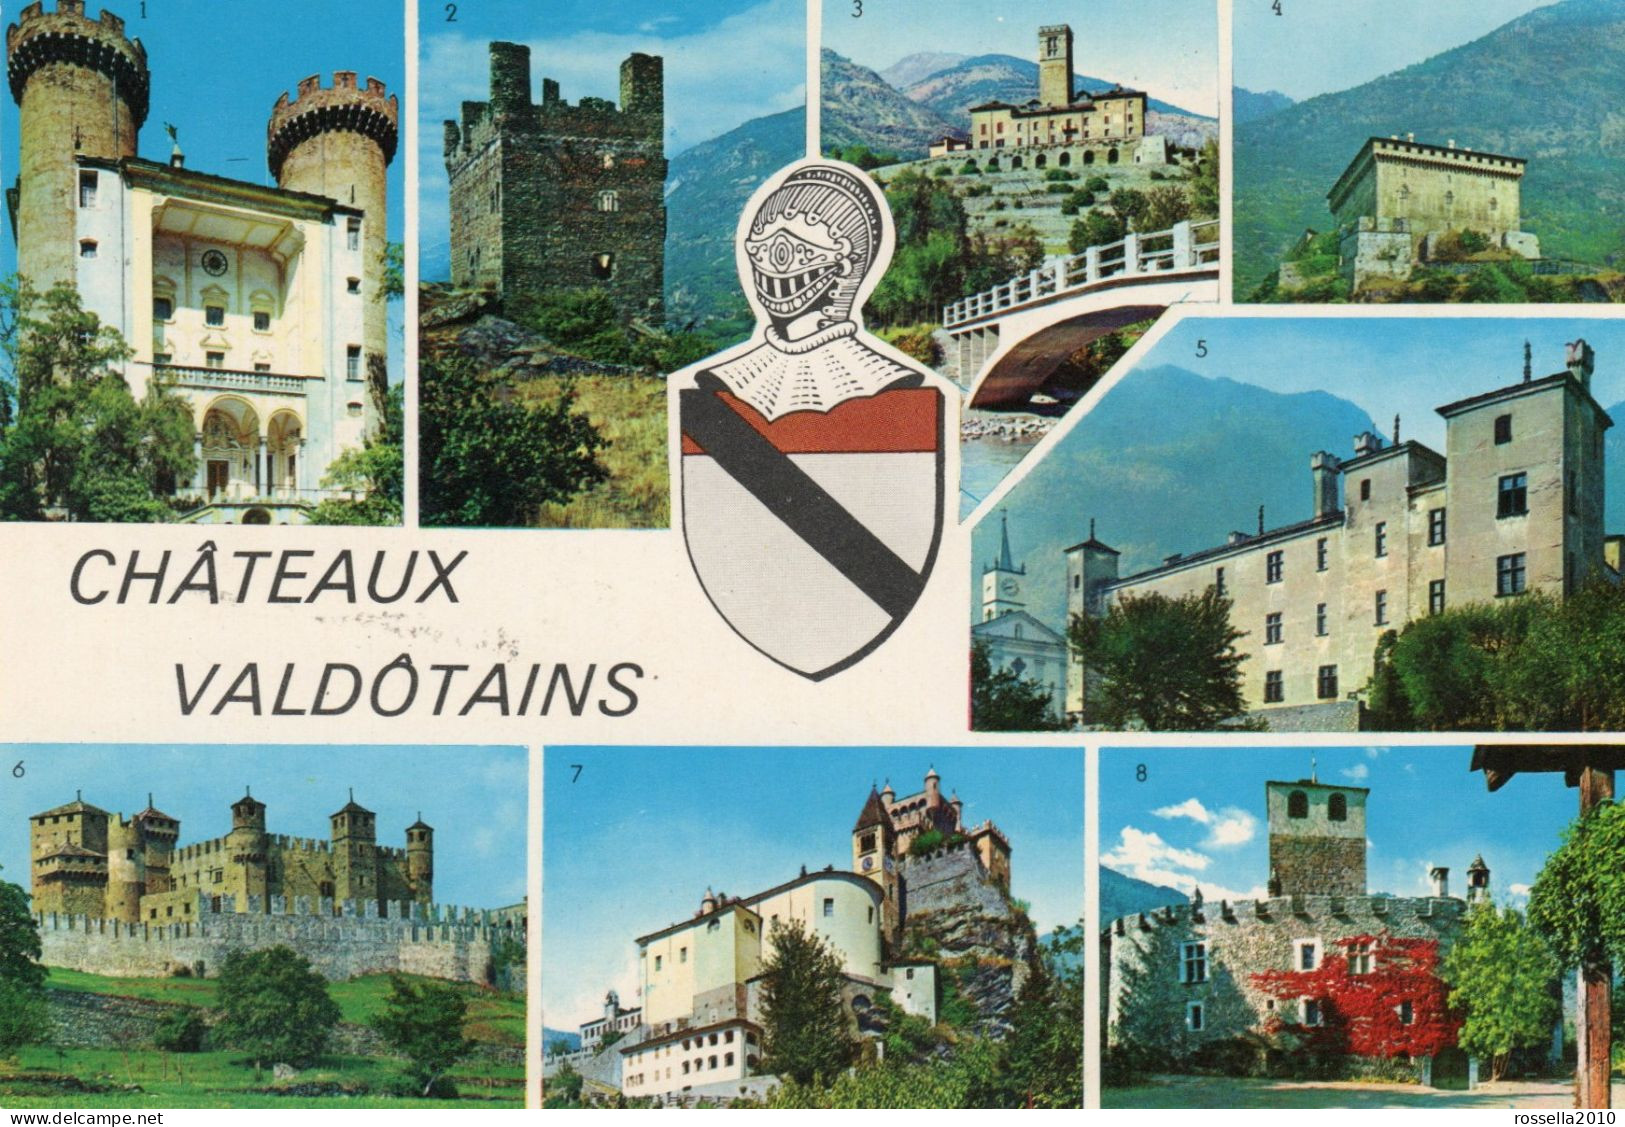 CARTOLINA 1975 ITALIA VALLE D' AOSTA CASTELLI CHATEAU VALDOTAINS SALUTI VEDUTINE Italy Postcard ITALIEN Ansichtskarten - Gruss Aus.../ Gruesse Aus...